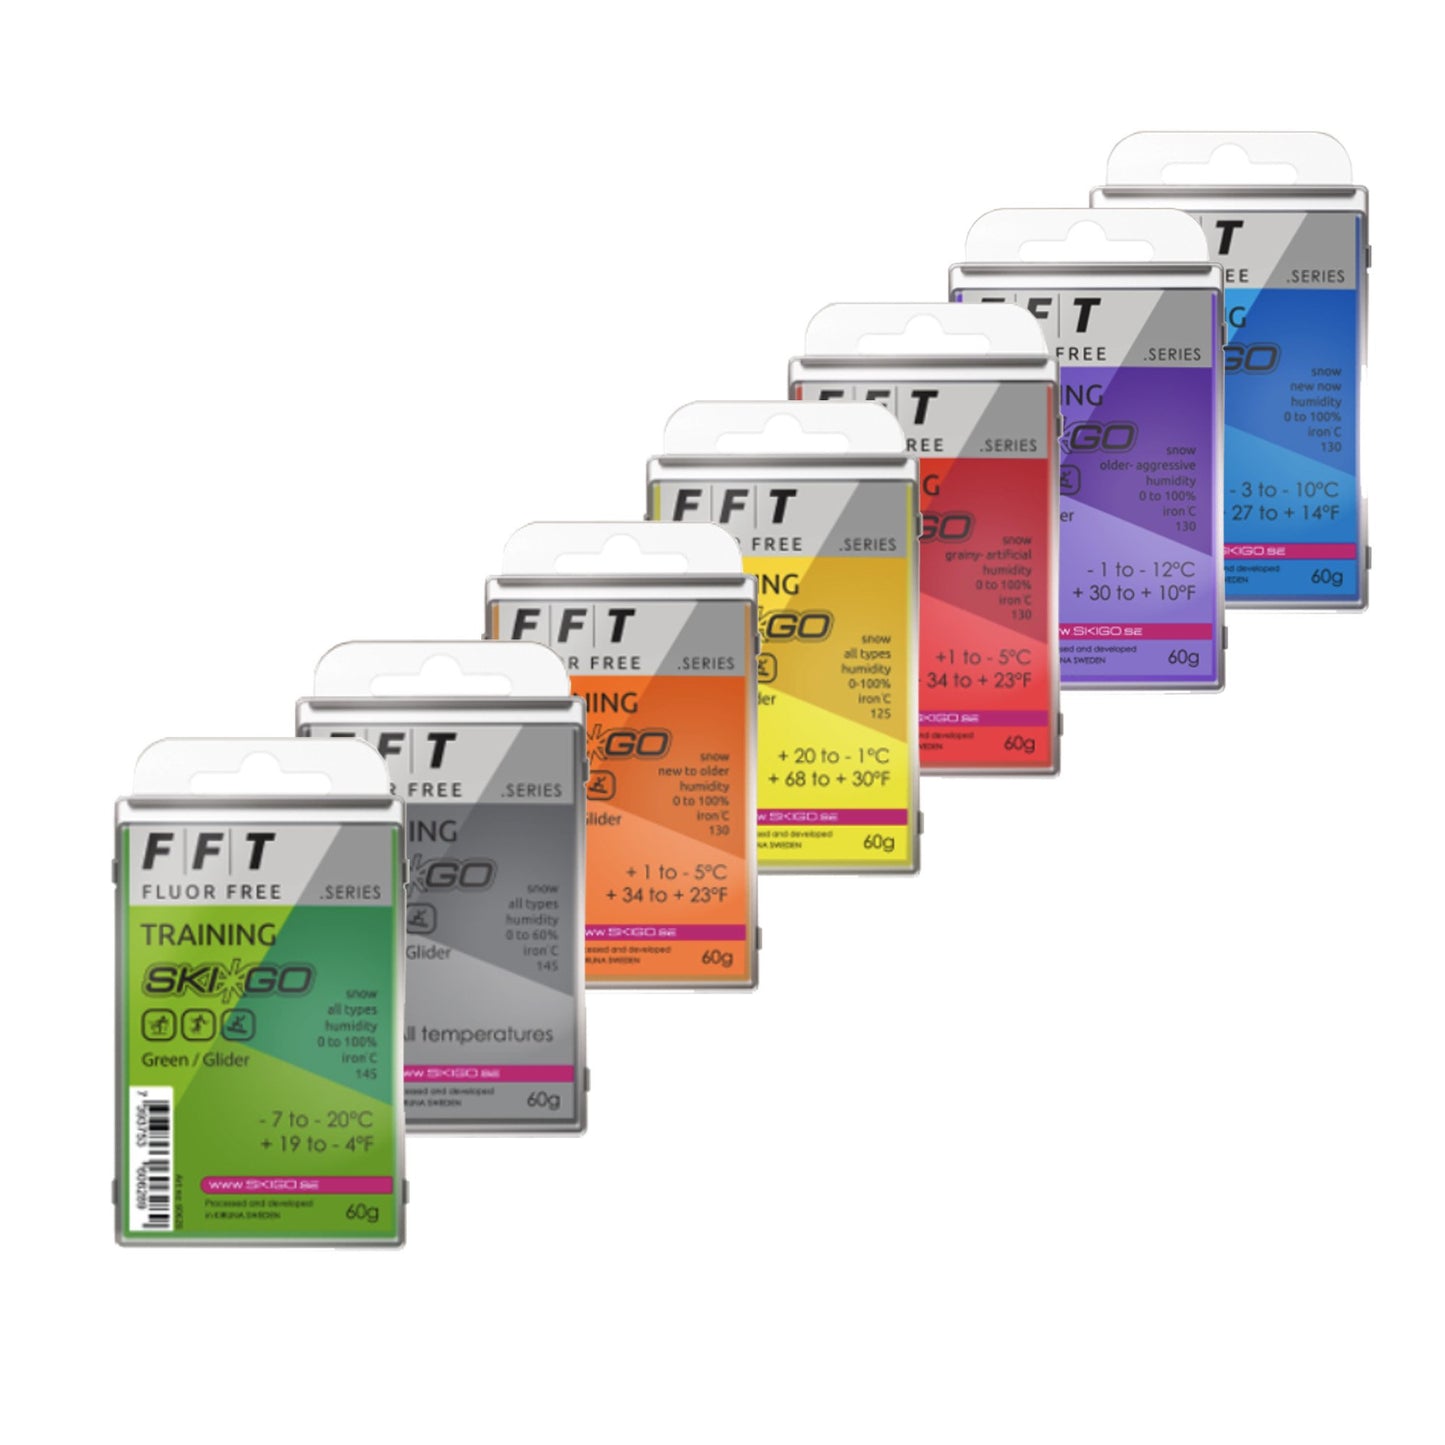 FFT Fluoridfreies Wachs für das Training